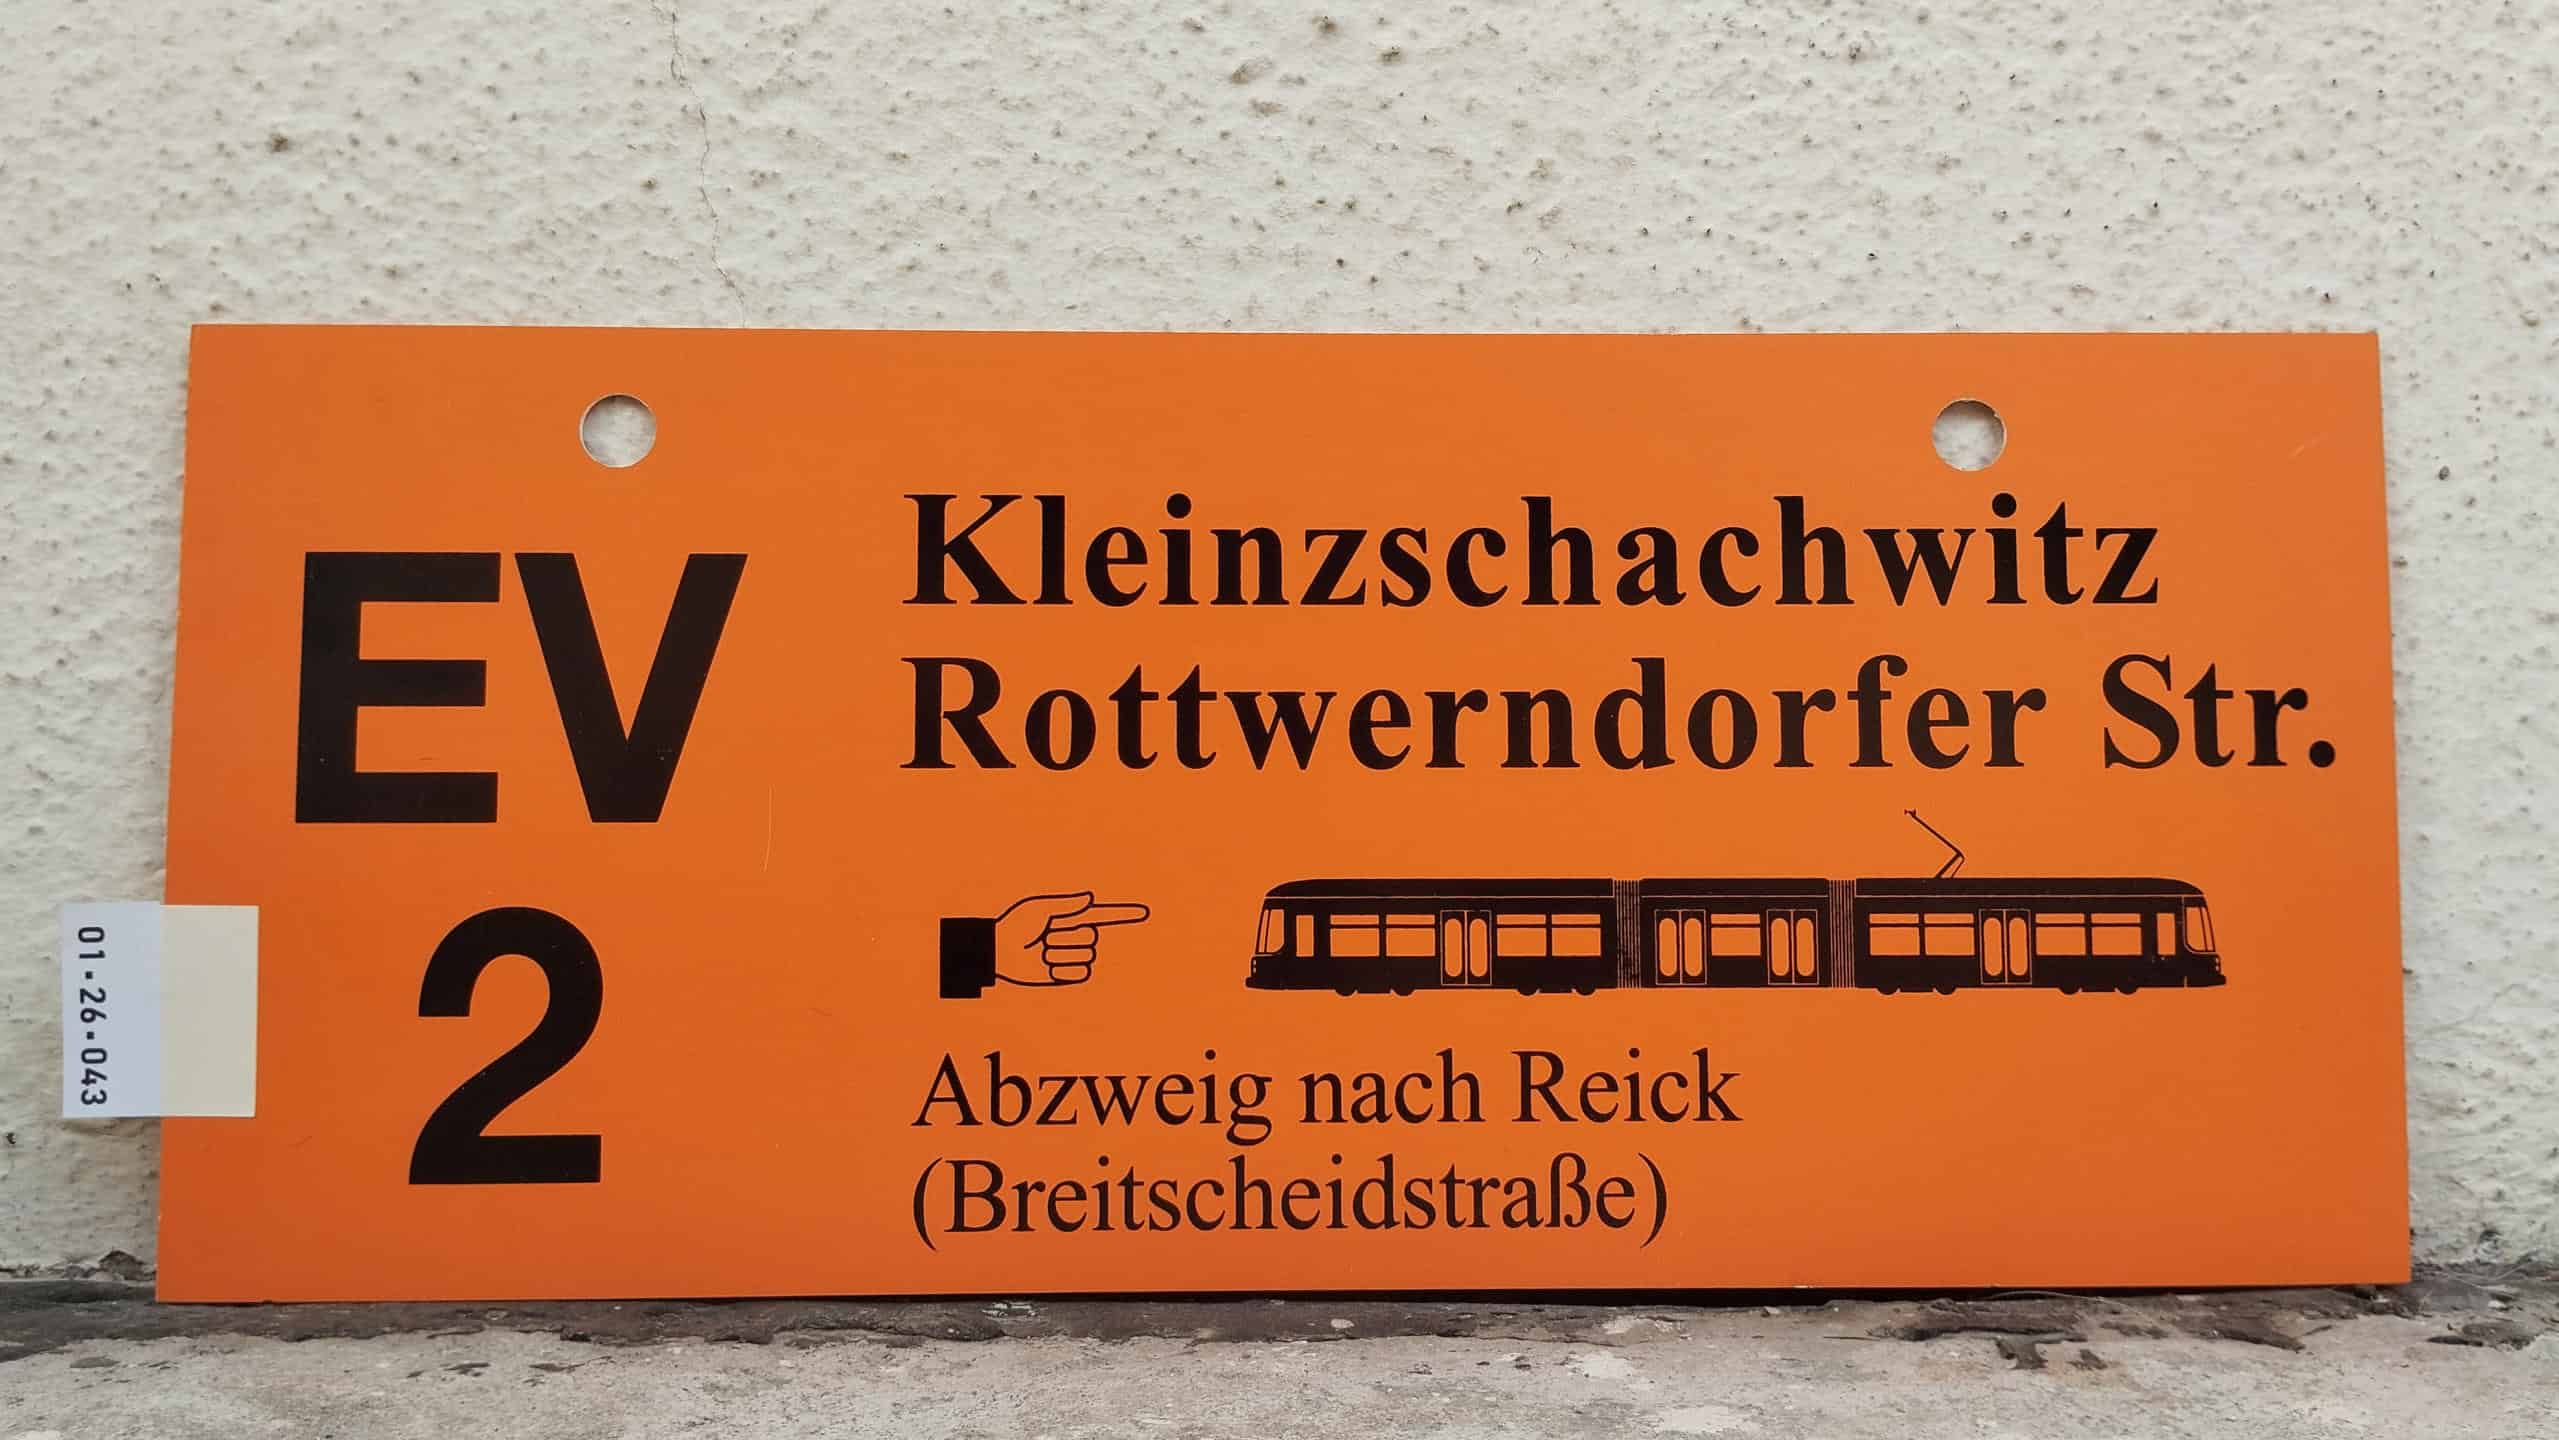 EV 2 Klein­zschach­witz – Rott­wern­dorfer Str. [Zei­ge­finger] [NGT] – Abzweig nach Reick (Breit­scheids­traße)